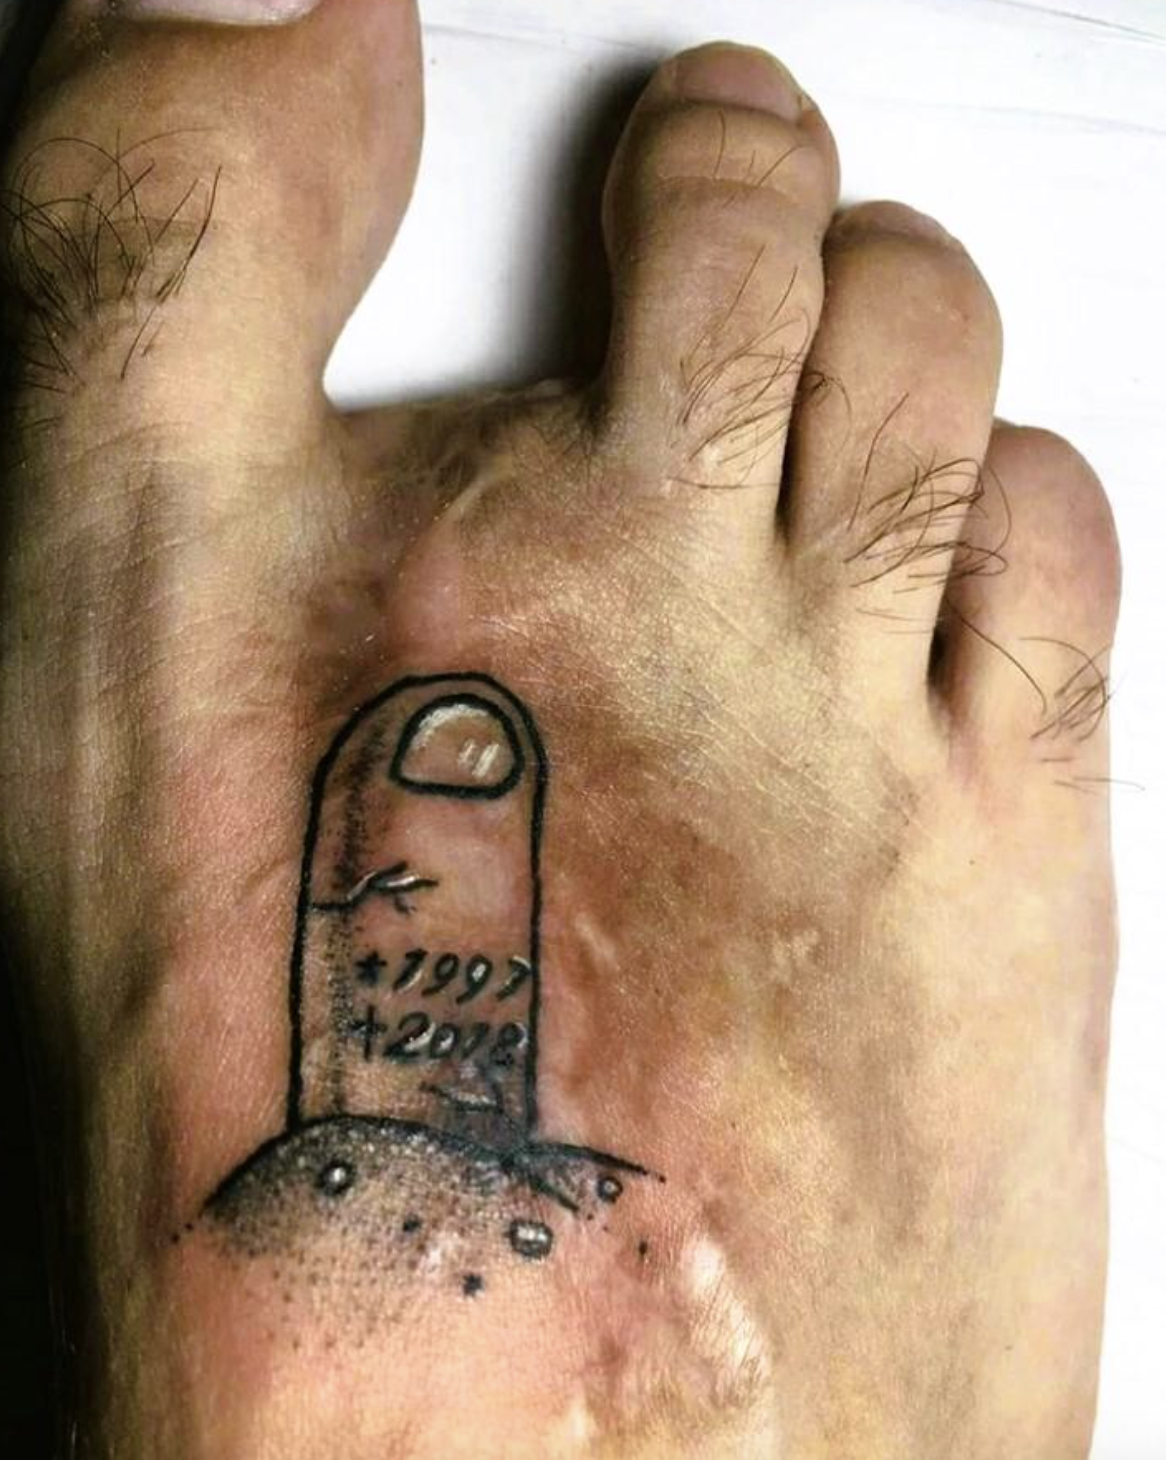 rip finger tattoo - k 7997 2078